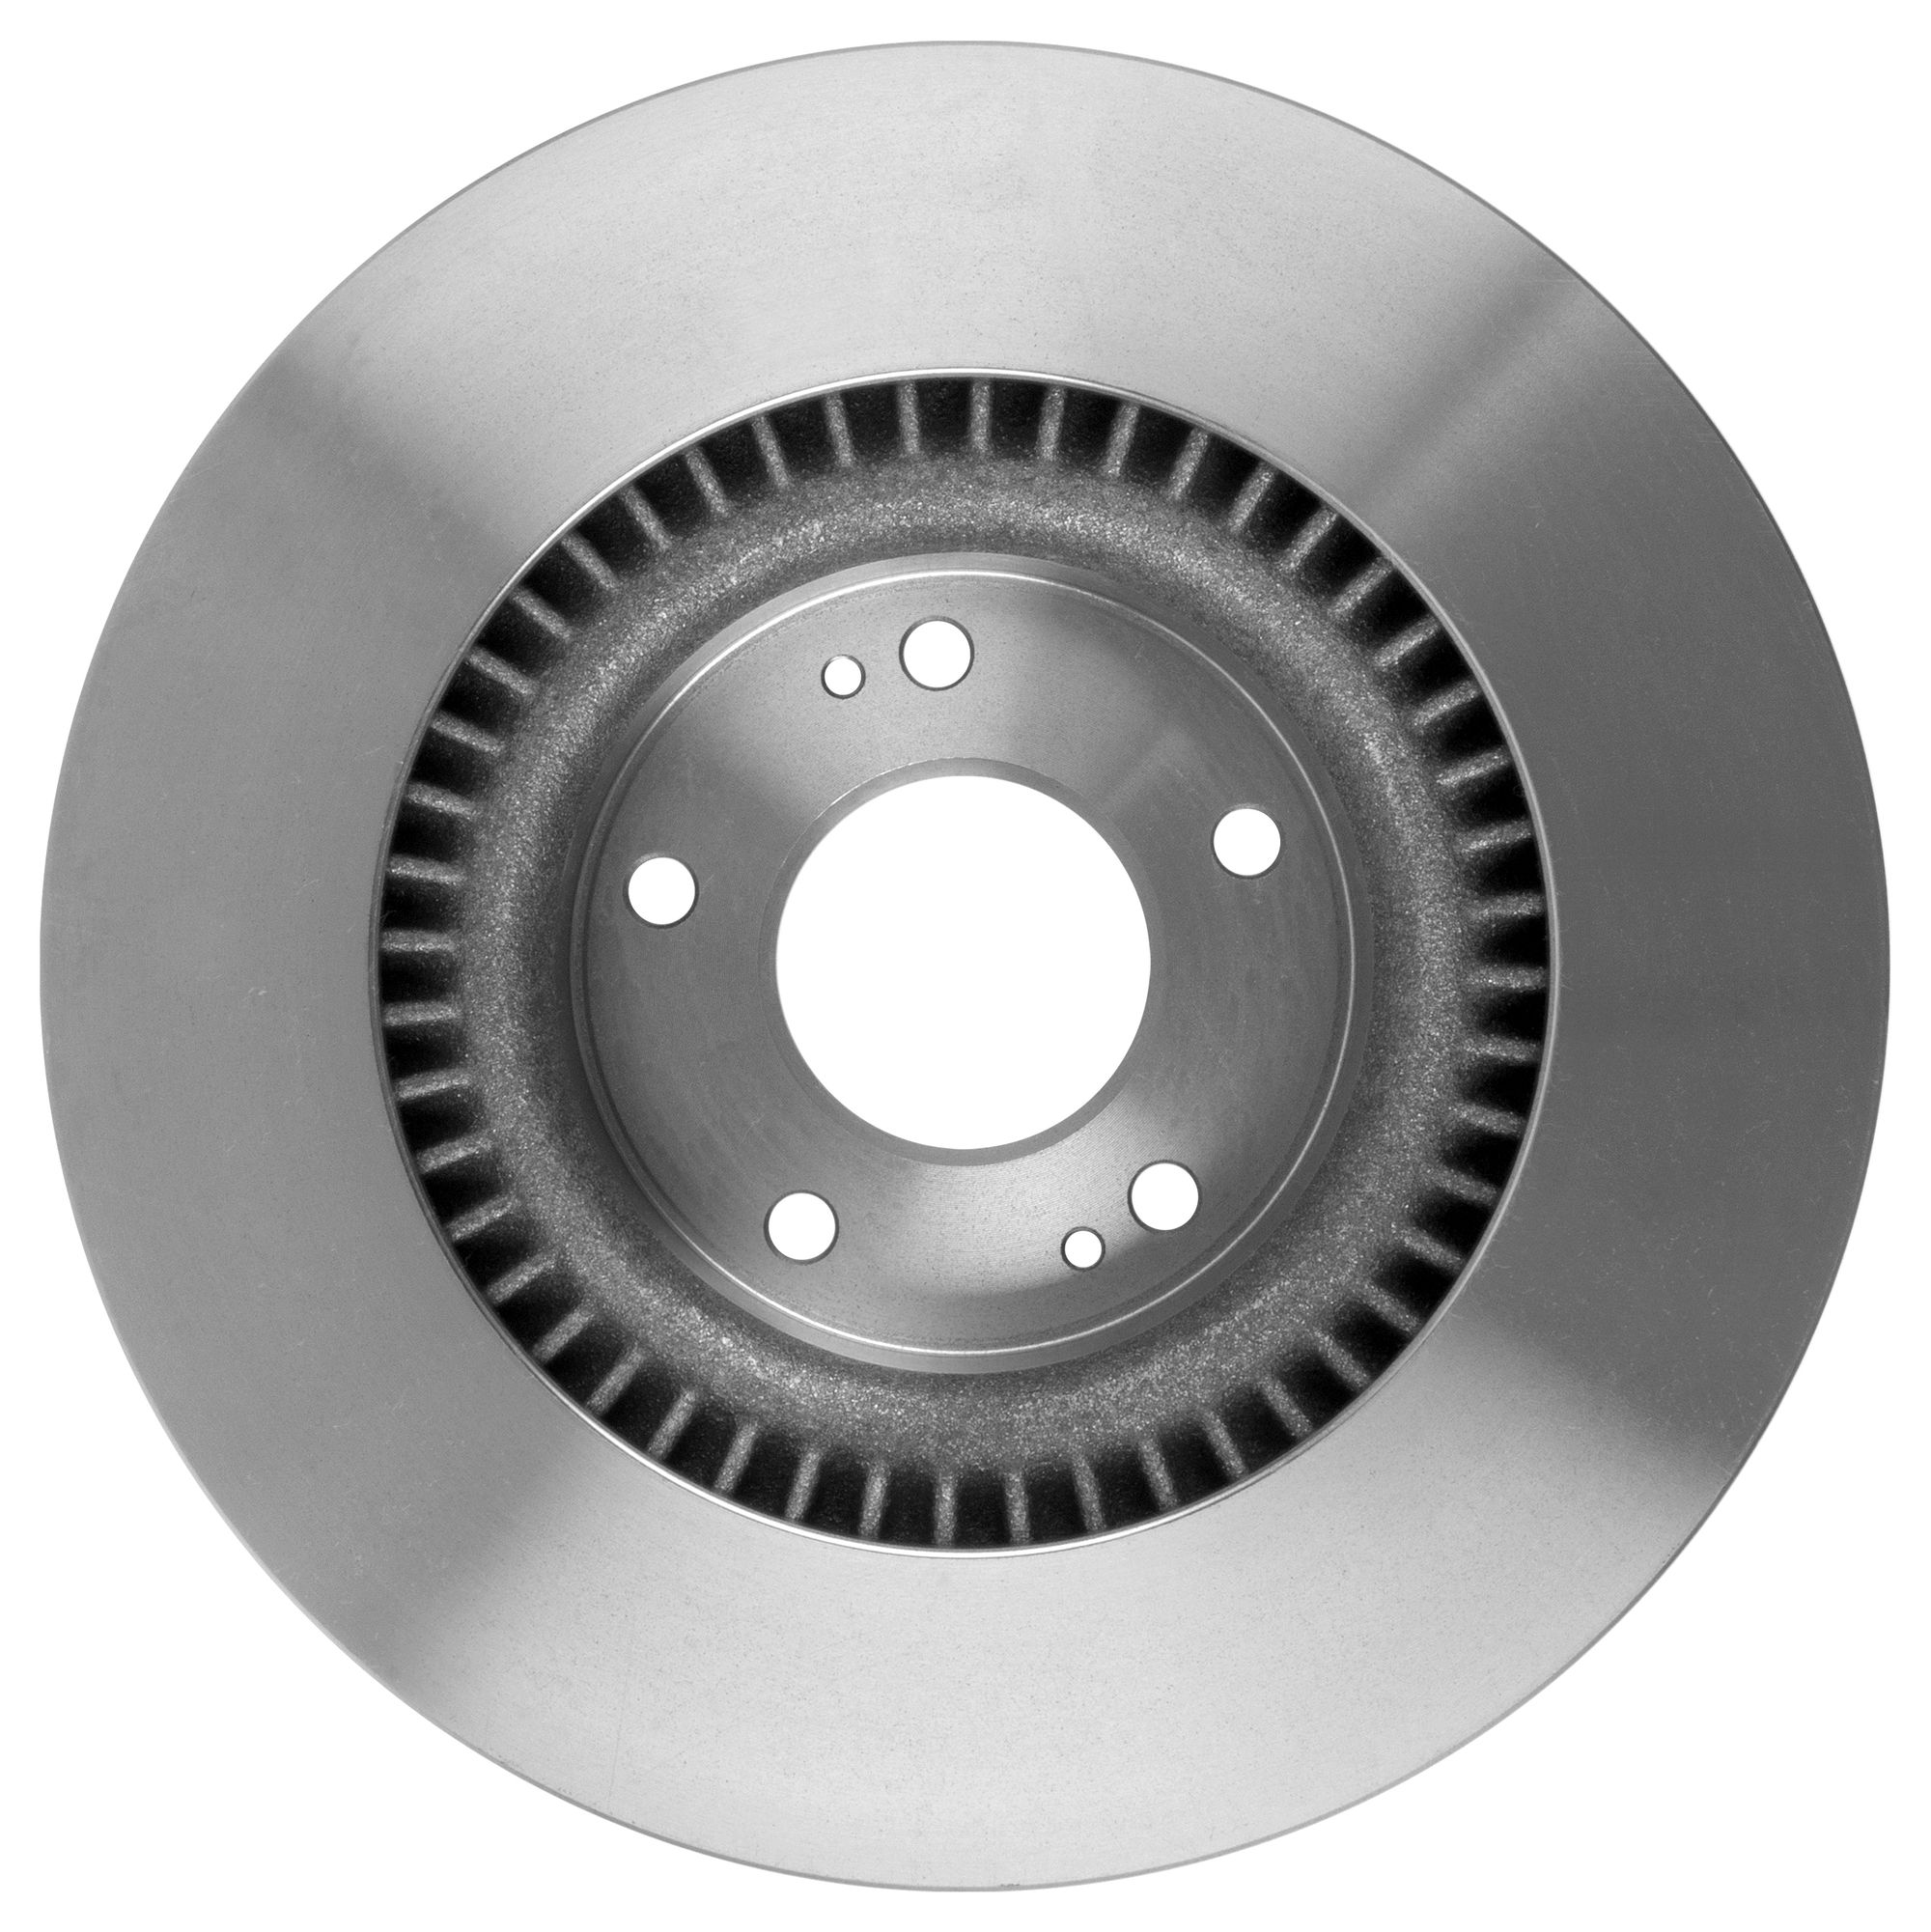 Тормозной диск, вентилируемый, передний, HYUNDAI Creta I 1.6 4WD,2.0, Tucson (JM), i30 II, i40 I, ix hd921 Hola